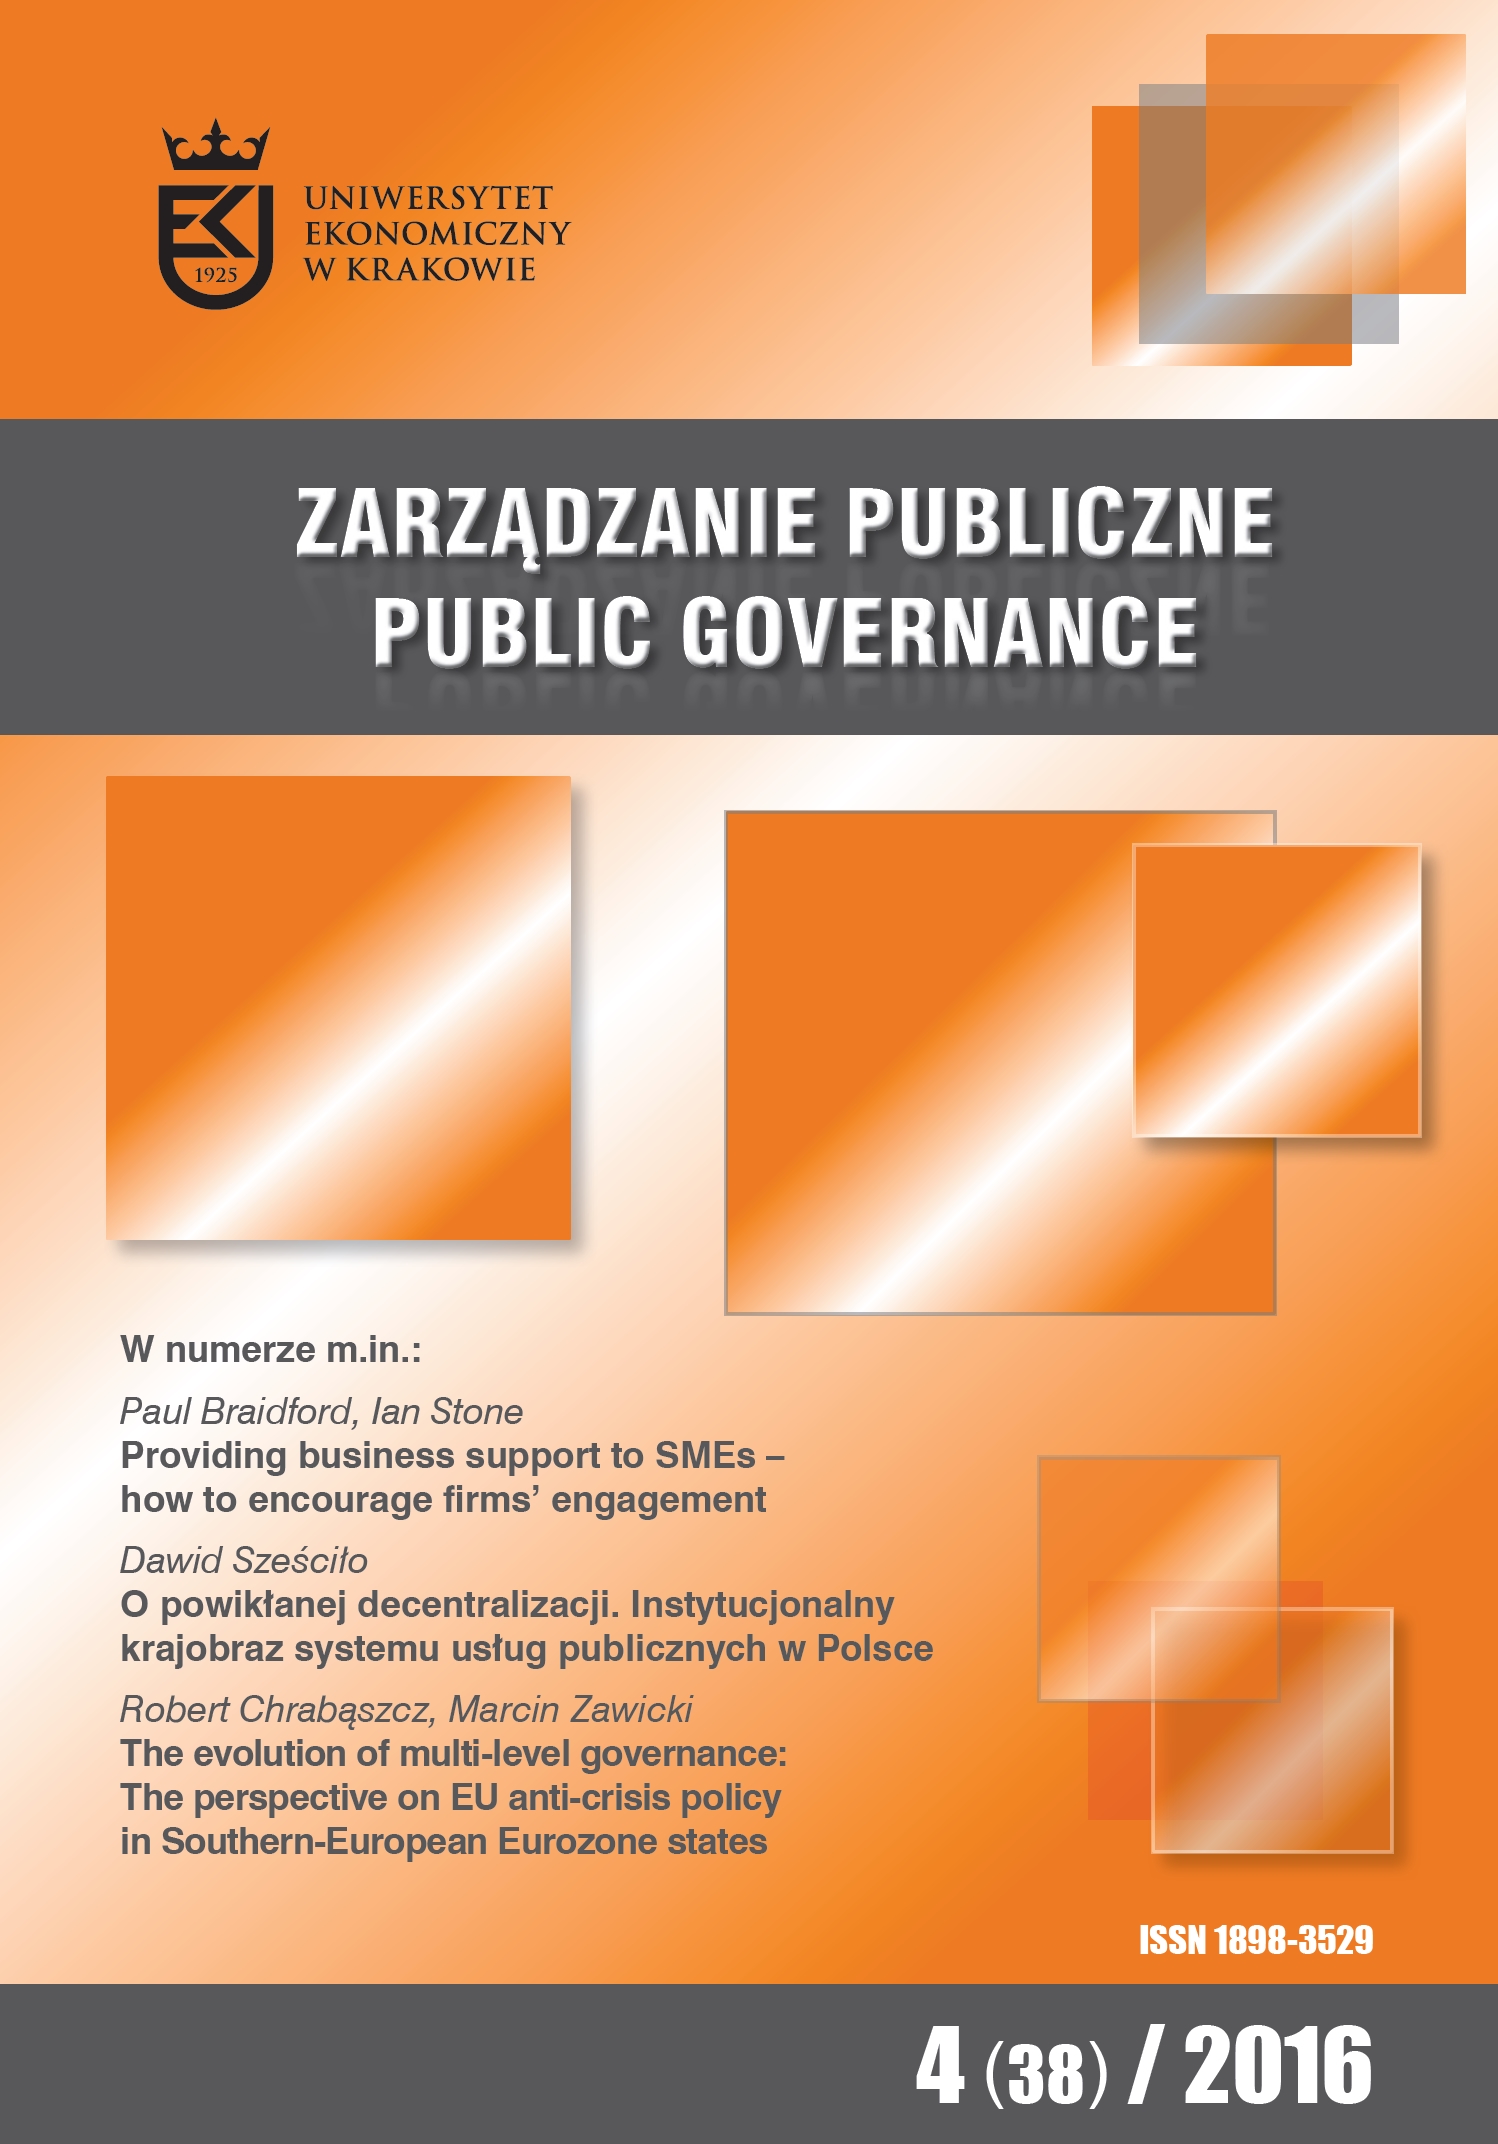 Ewolucja zarządzania wielopoziomowego (multi-level governance). Perspektywa polityki antykryzysowej UE w południowoeuropejskich państwach strefy euro